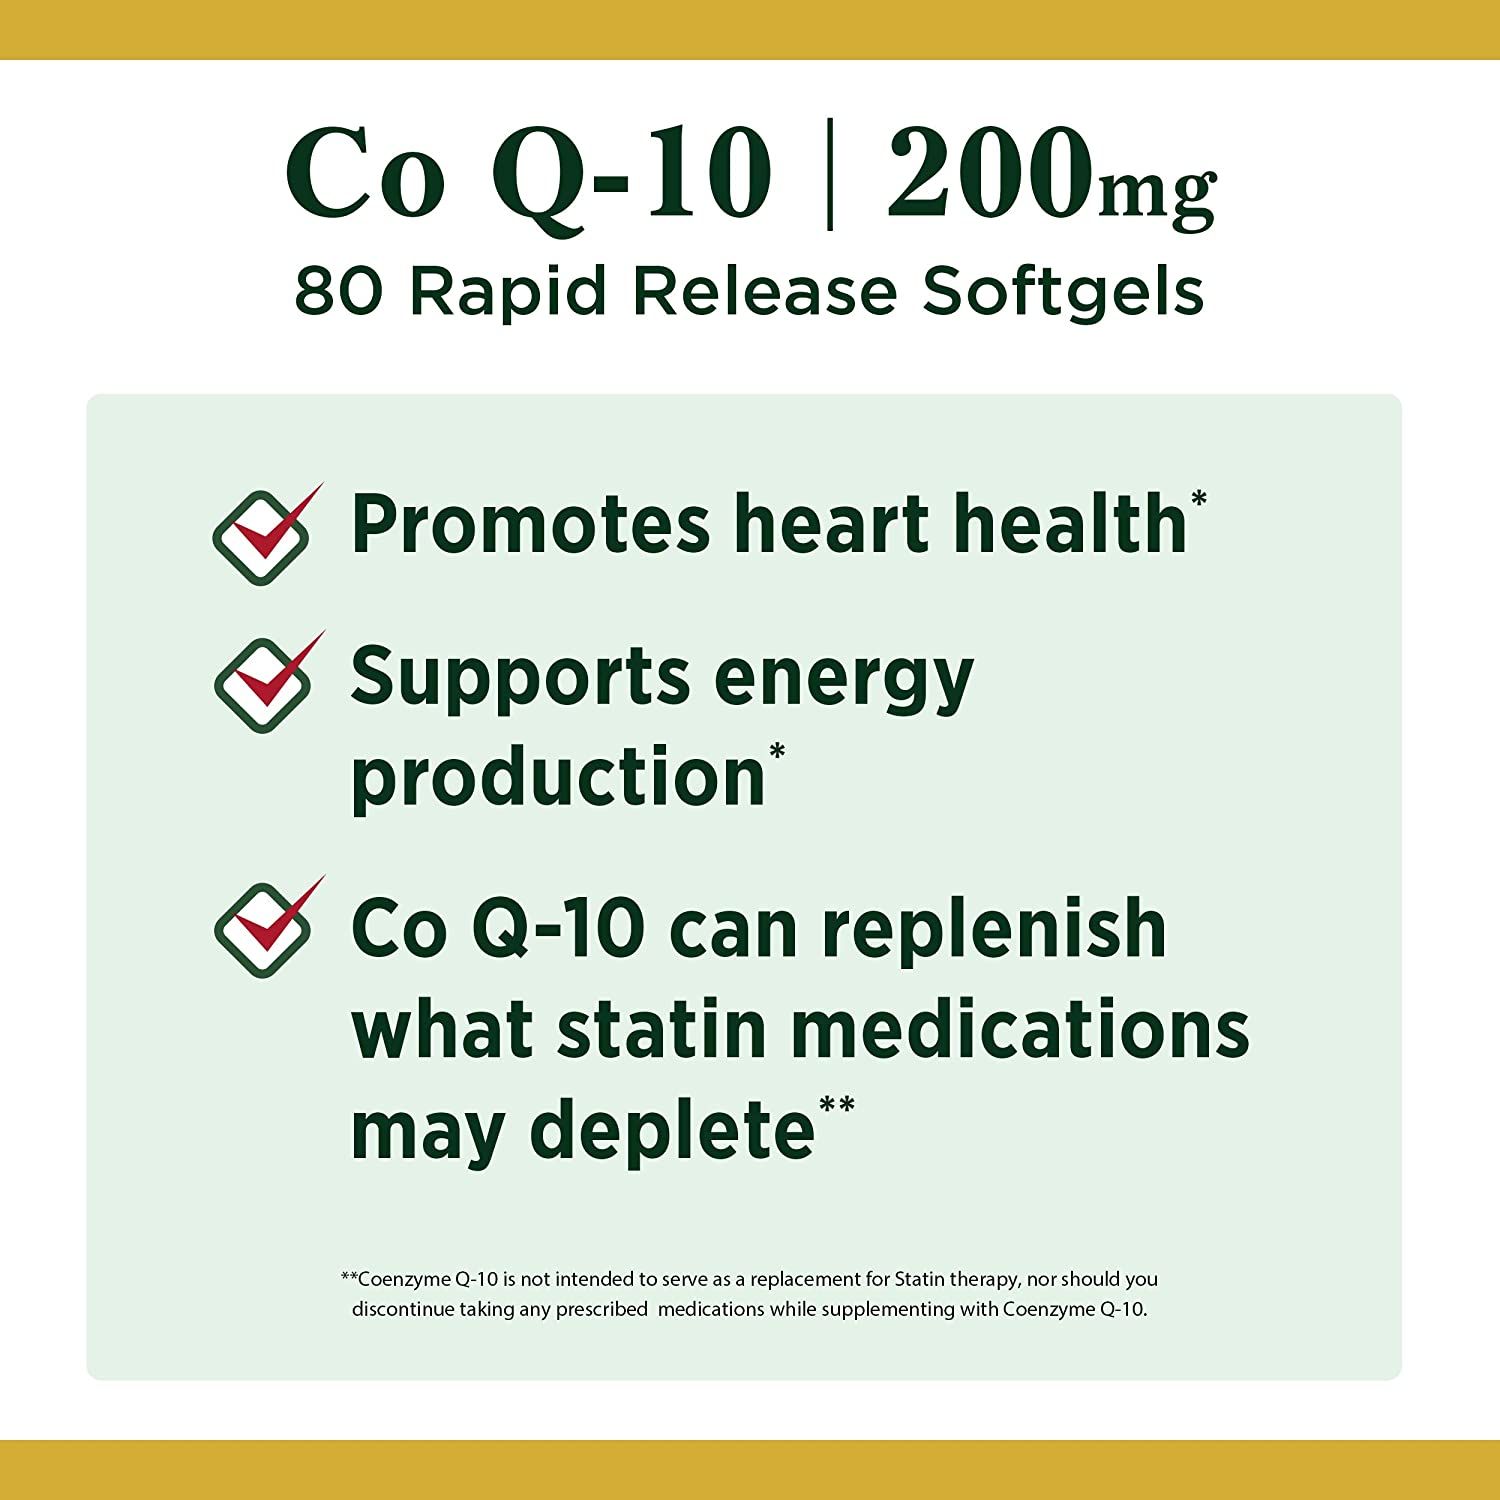 Nature's Bounty Co Q-10 200 mg Softgels - 80 ct